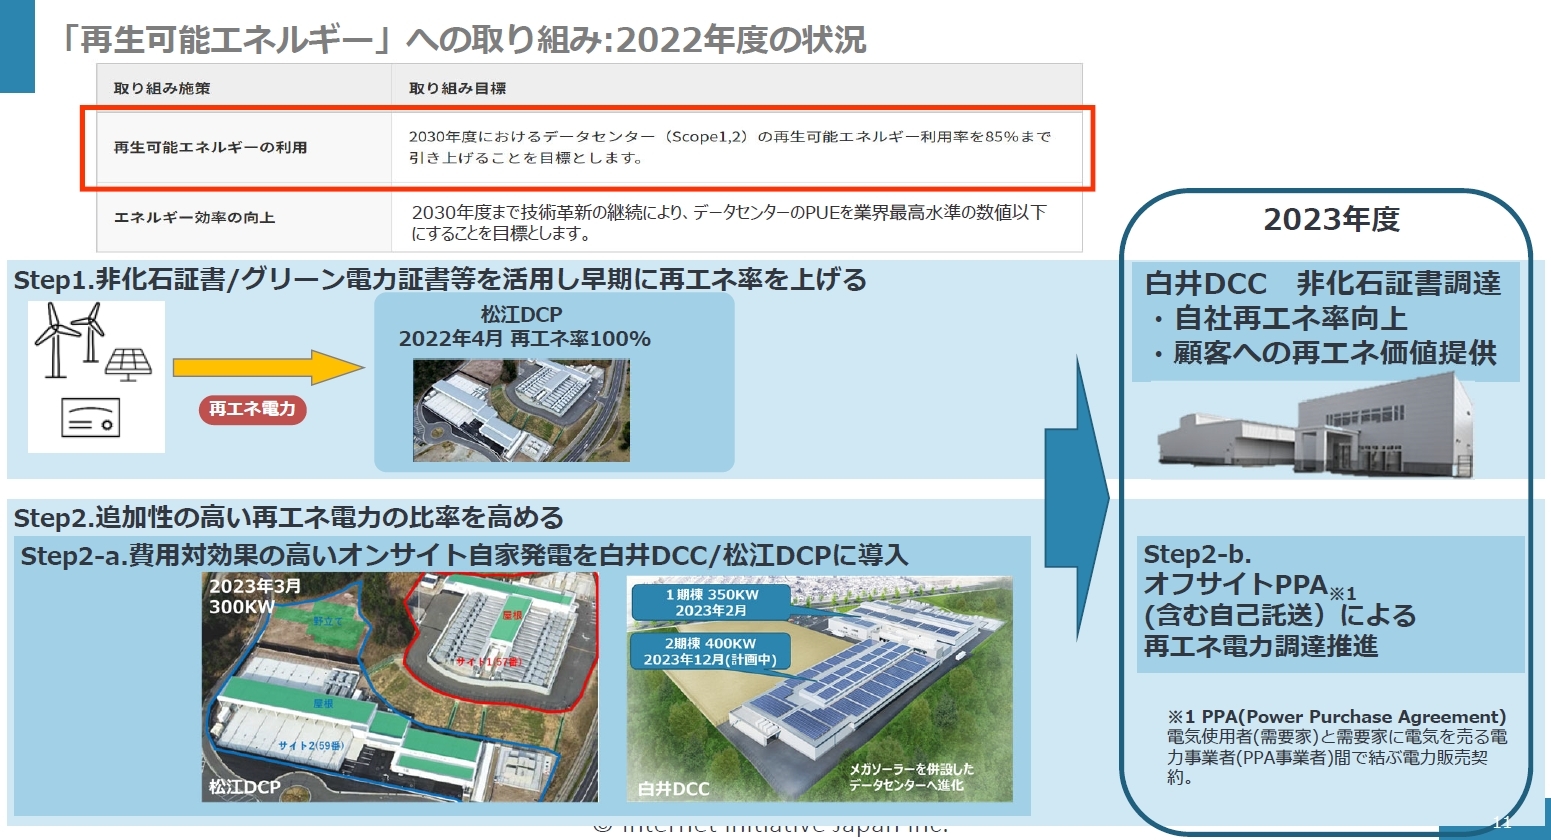 IIJの松江および白井データセンターにおける再エネ導入の取り組み